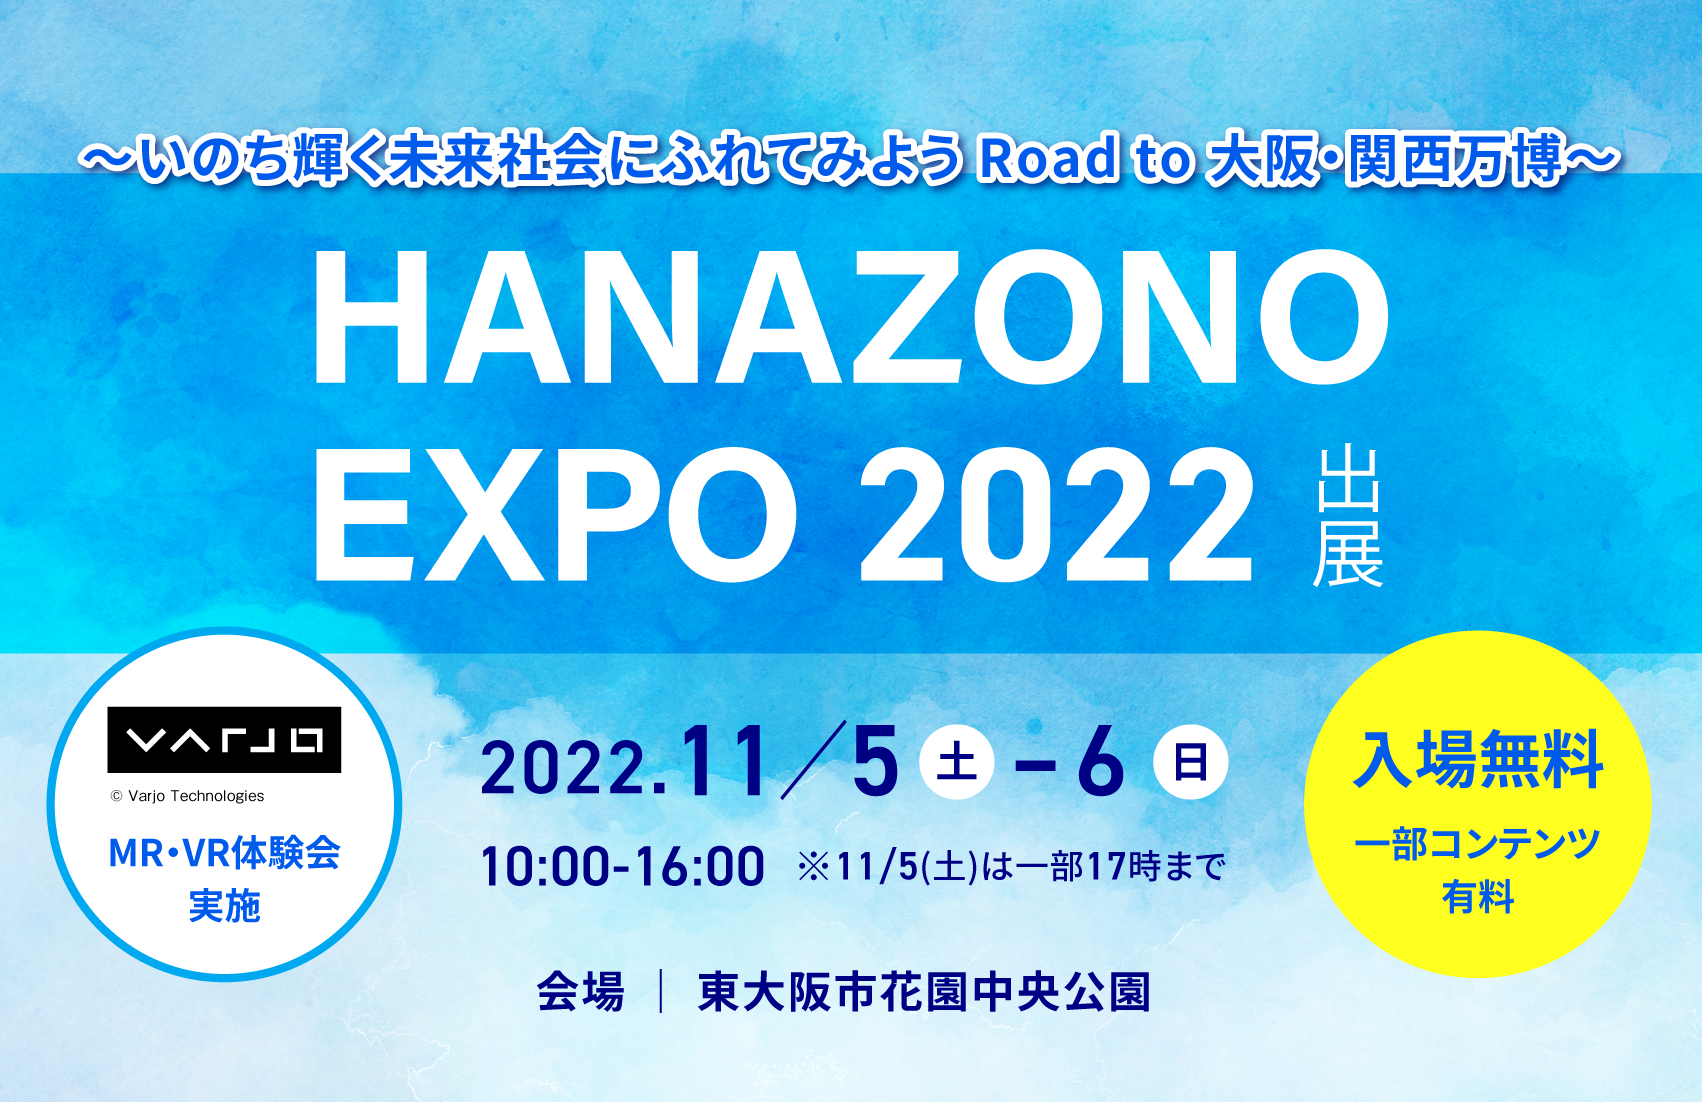 「HANAZONO EXPO いのち輝く未来社会にふれてみよう Road to 大阪・関西万博」にVarjoを出展いたします